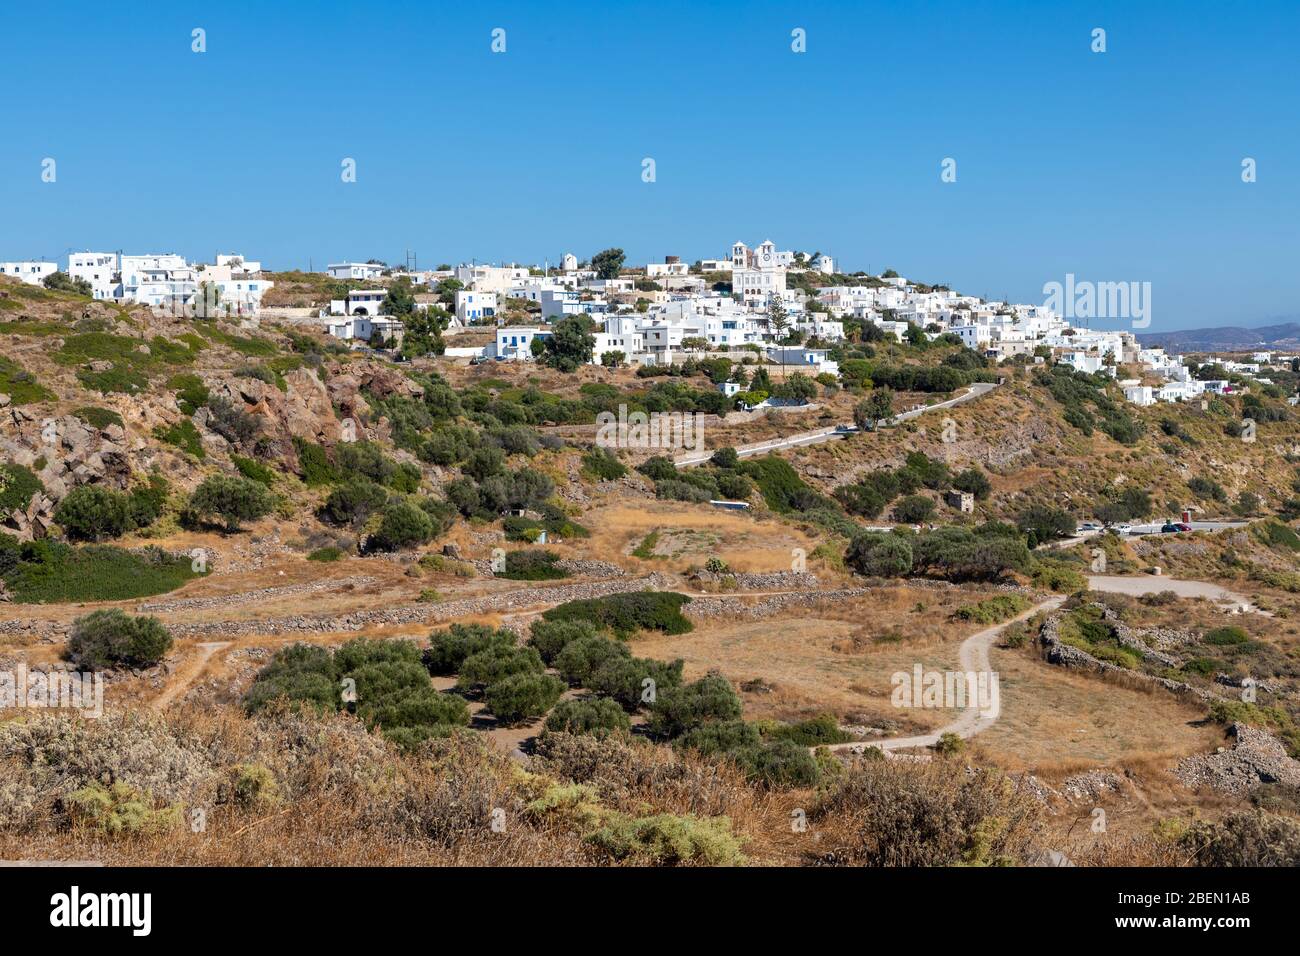 Village de Trypiti sur les montagnes et les ruines, Milos, Grèce Banque D'Images